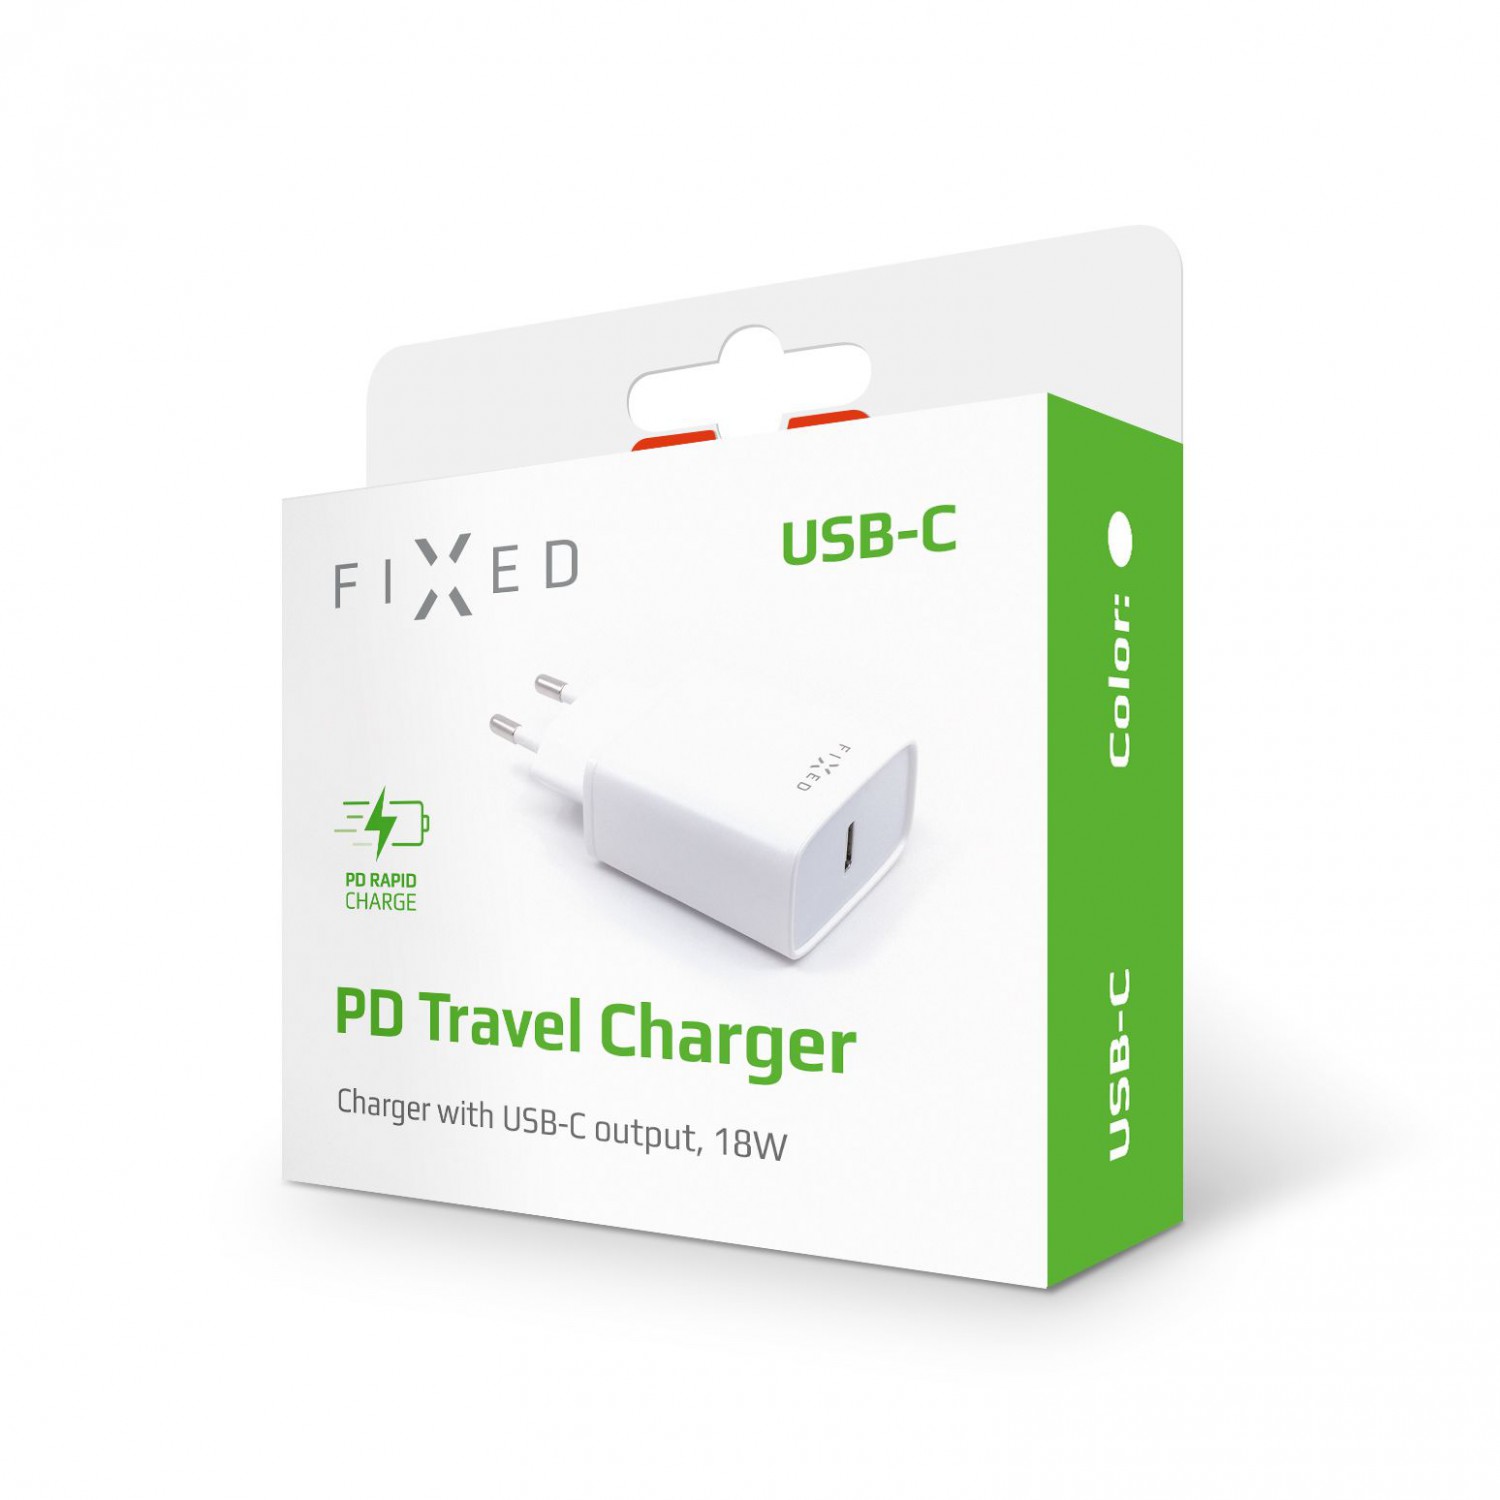 Síťová nabíječka FIXED s USB-C výstupem a podporou PD, 18W, bílá